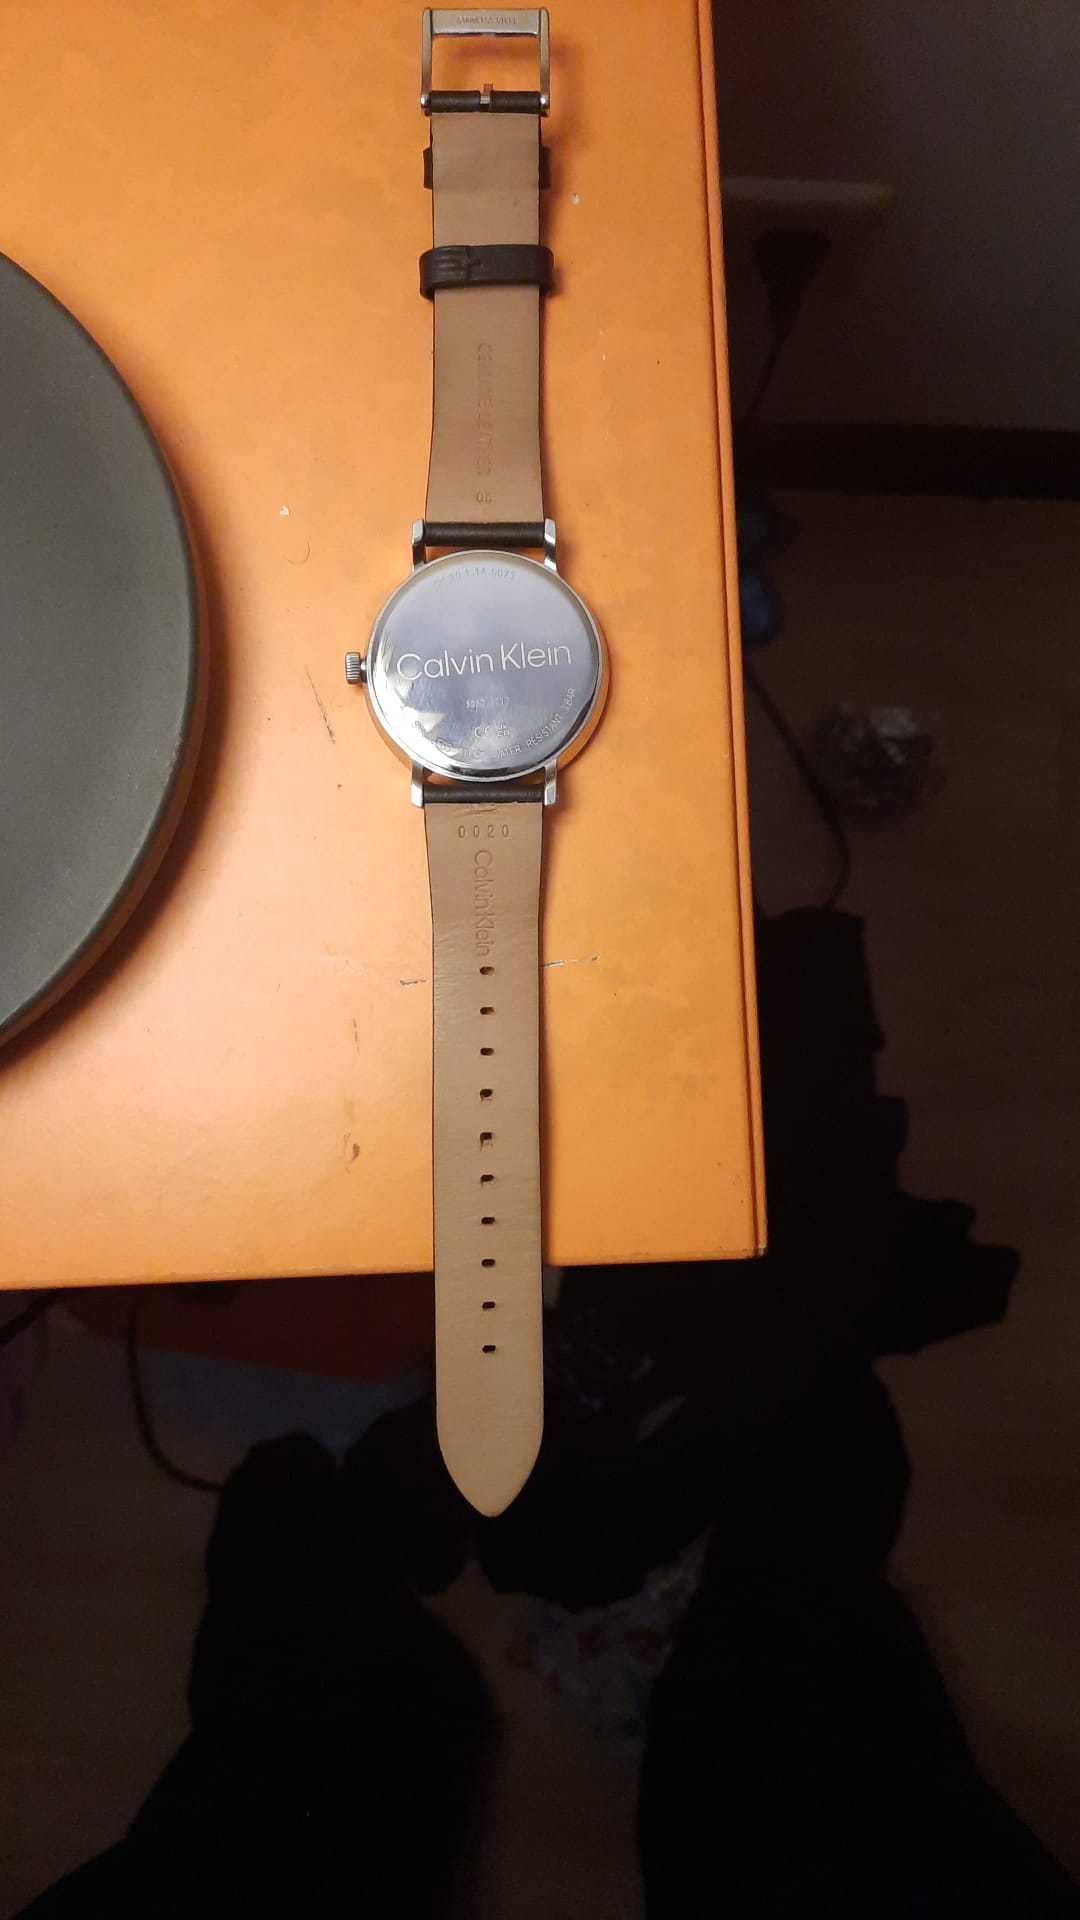 Relógio da Calvin Klein